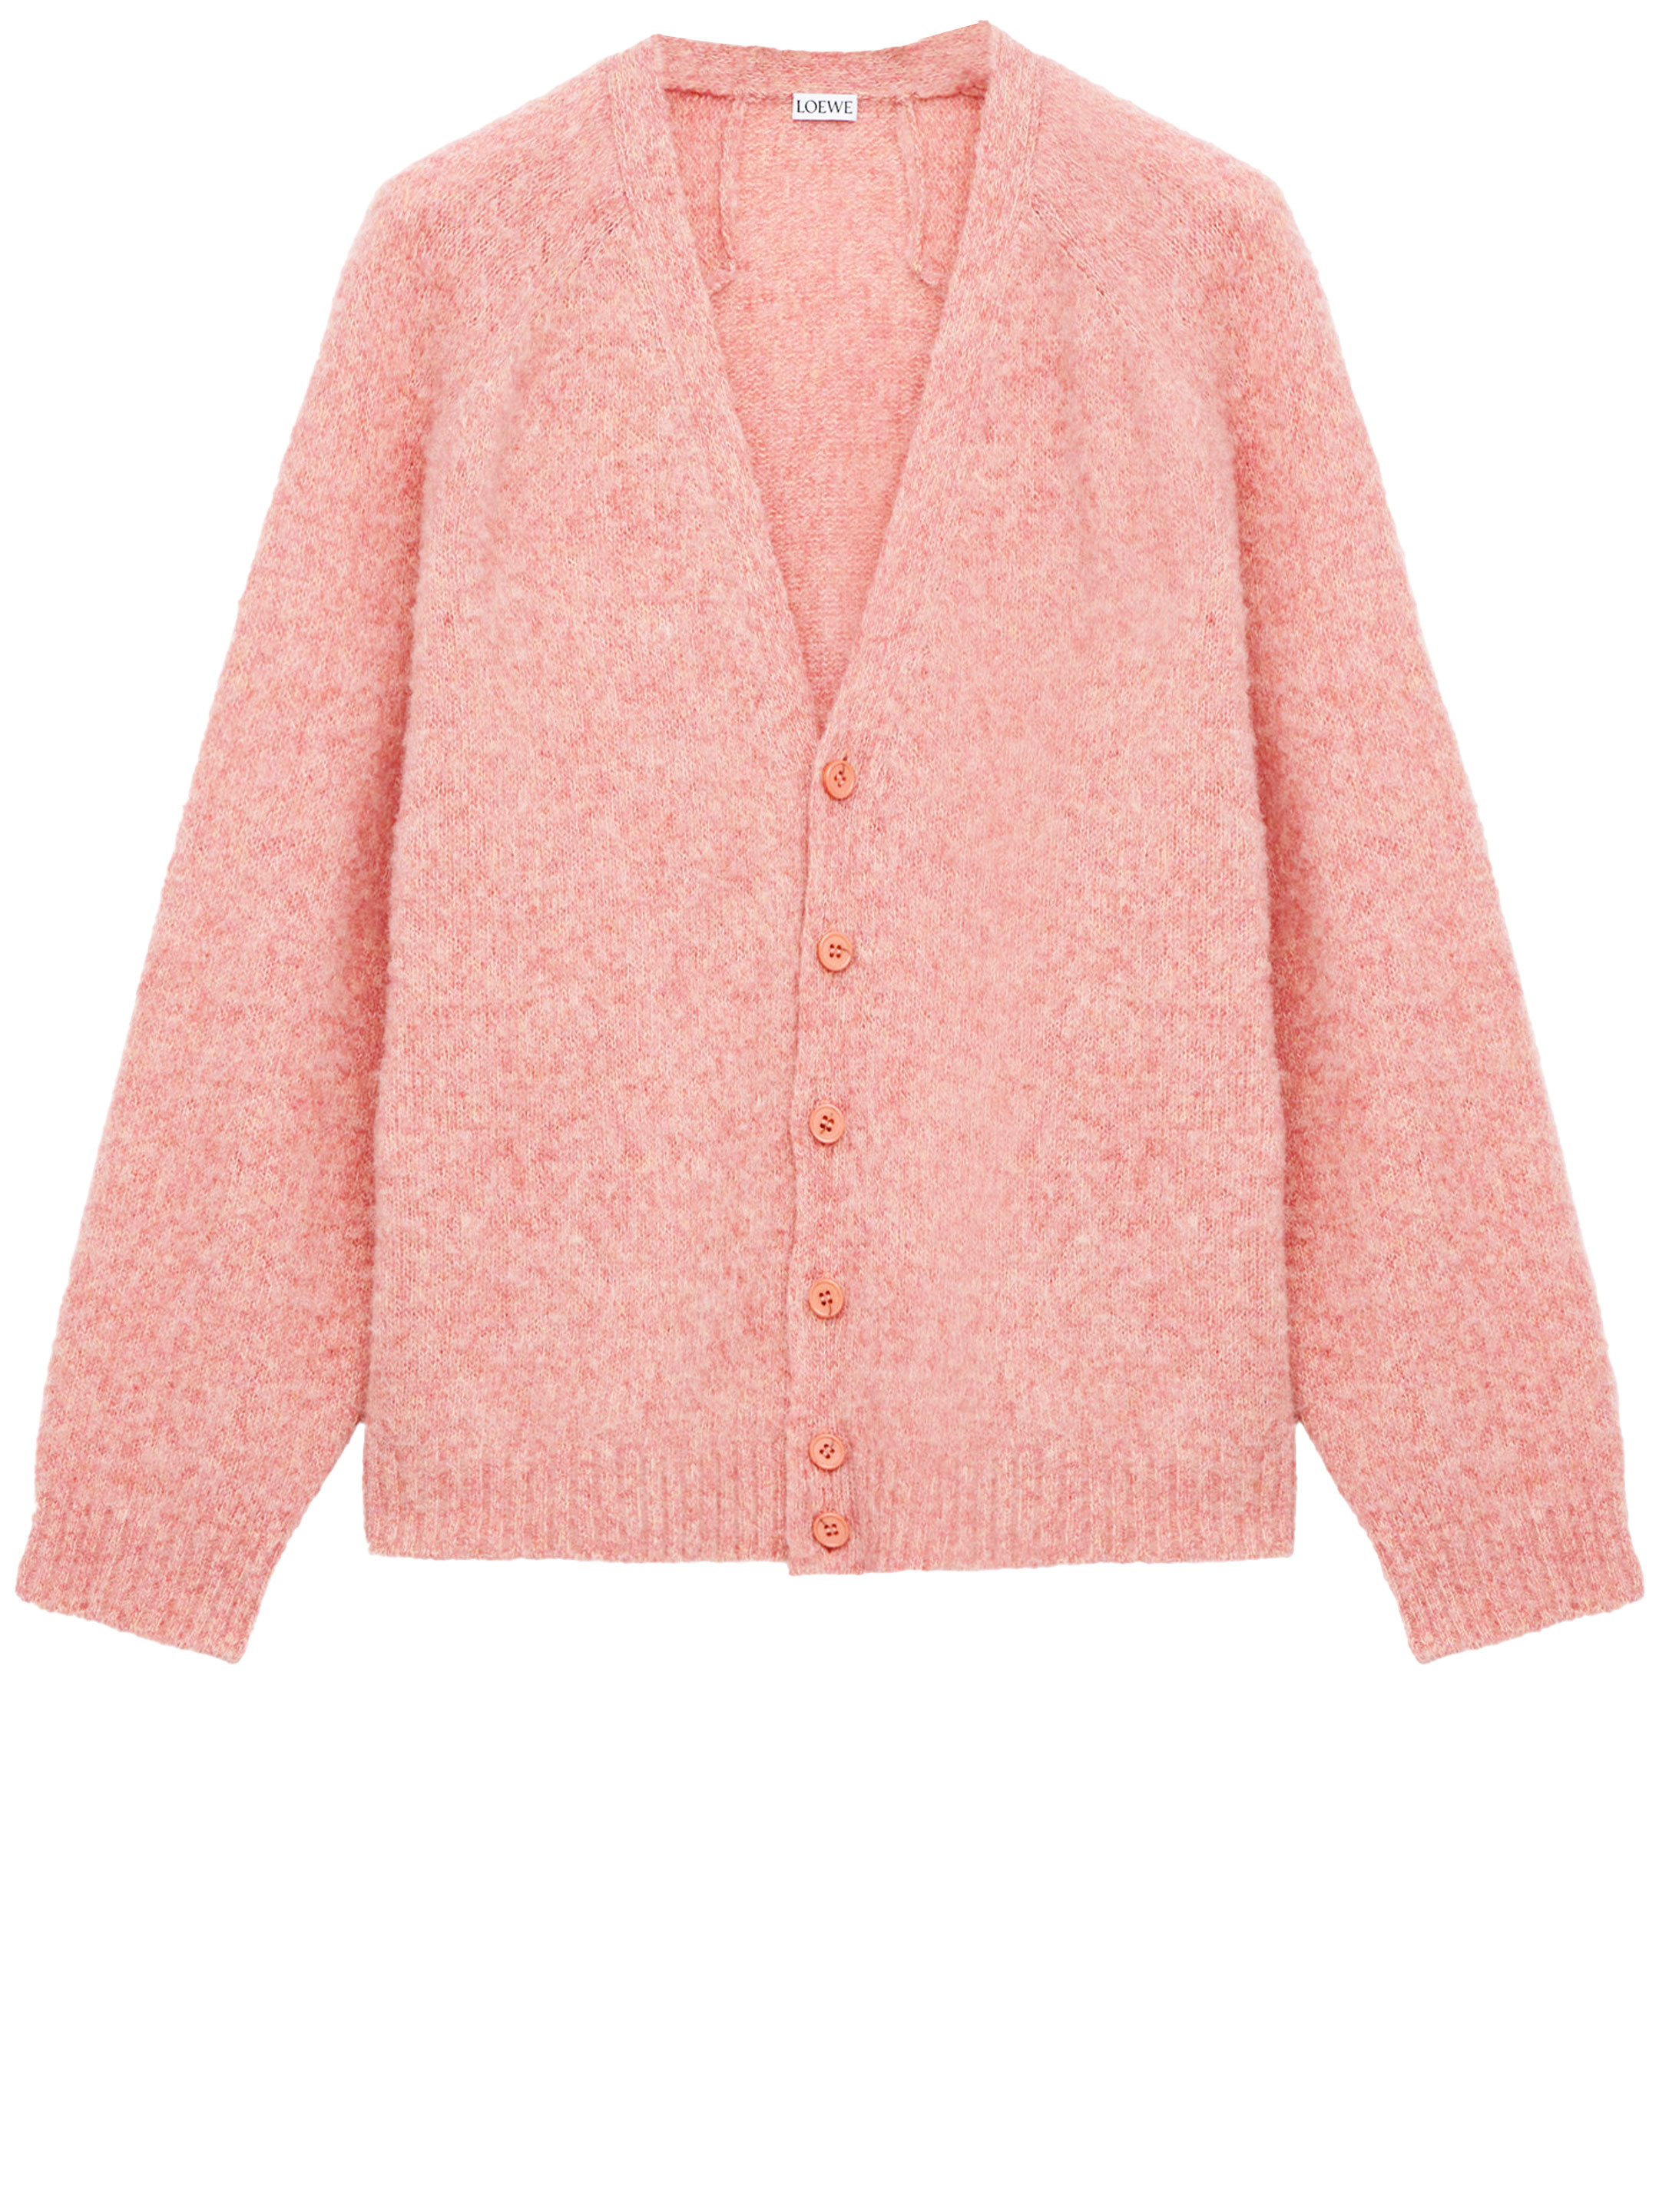 Кардиган Loewe Wool, розовый